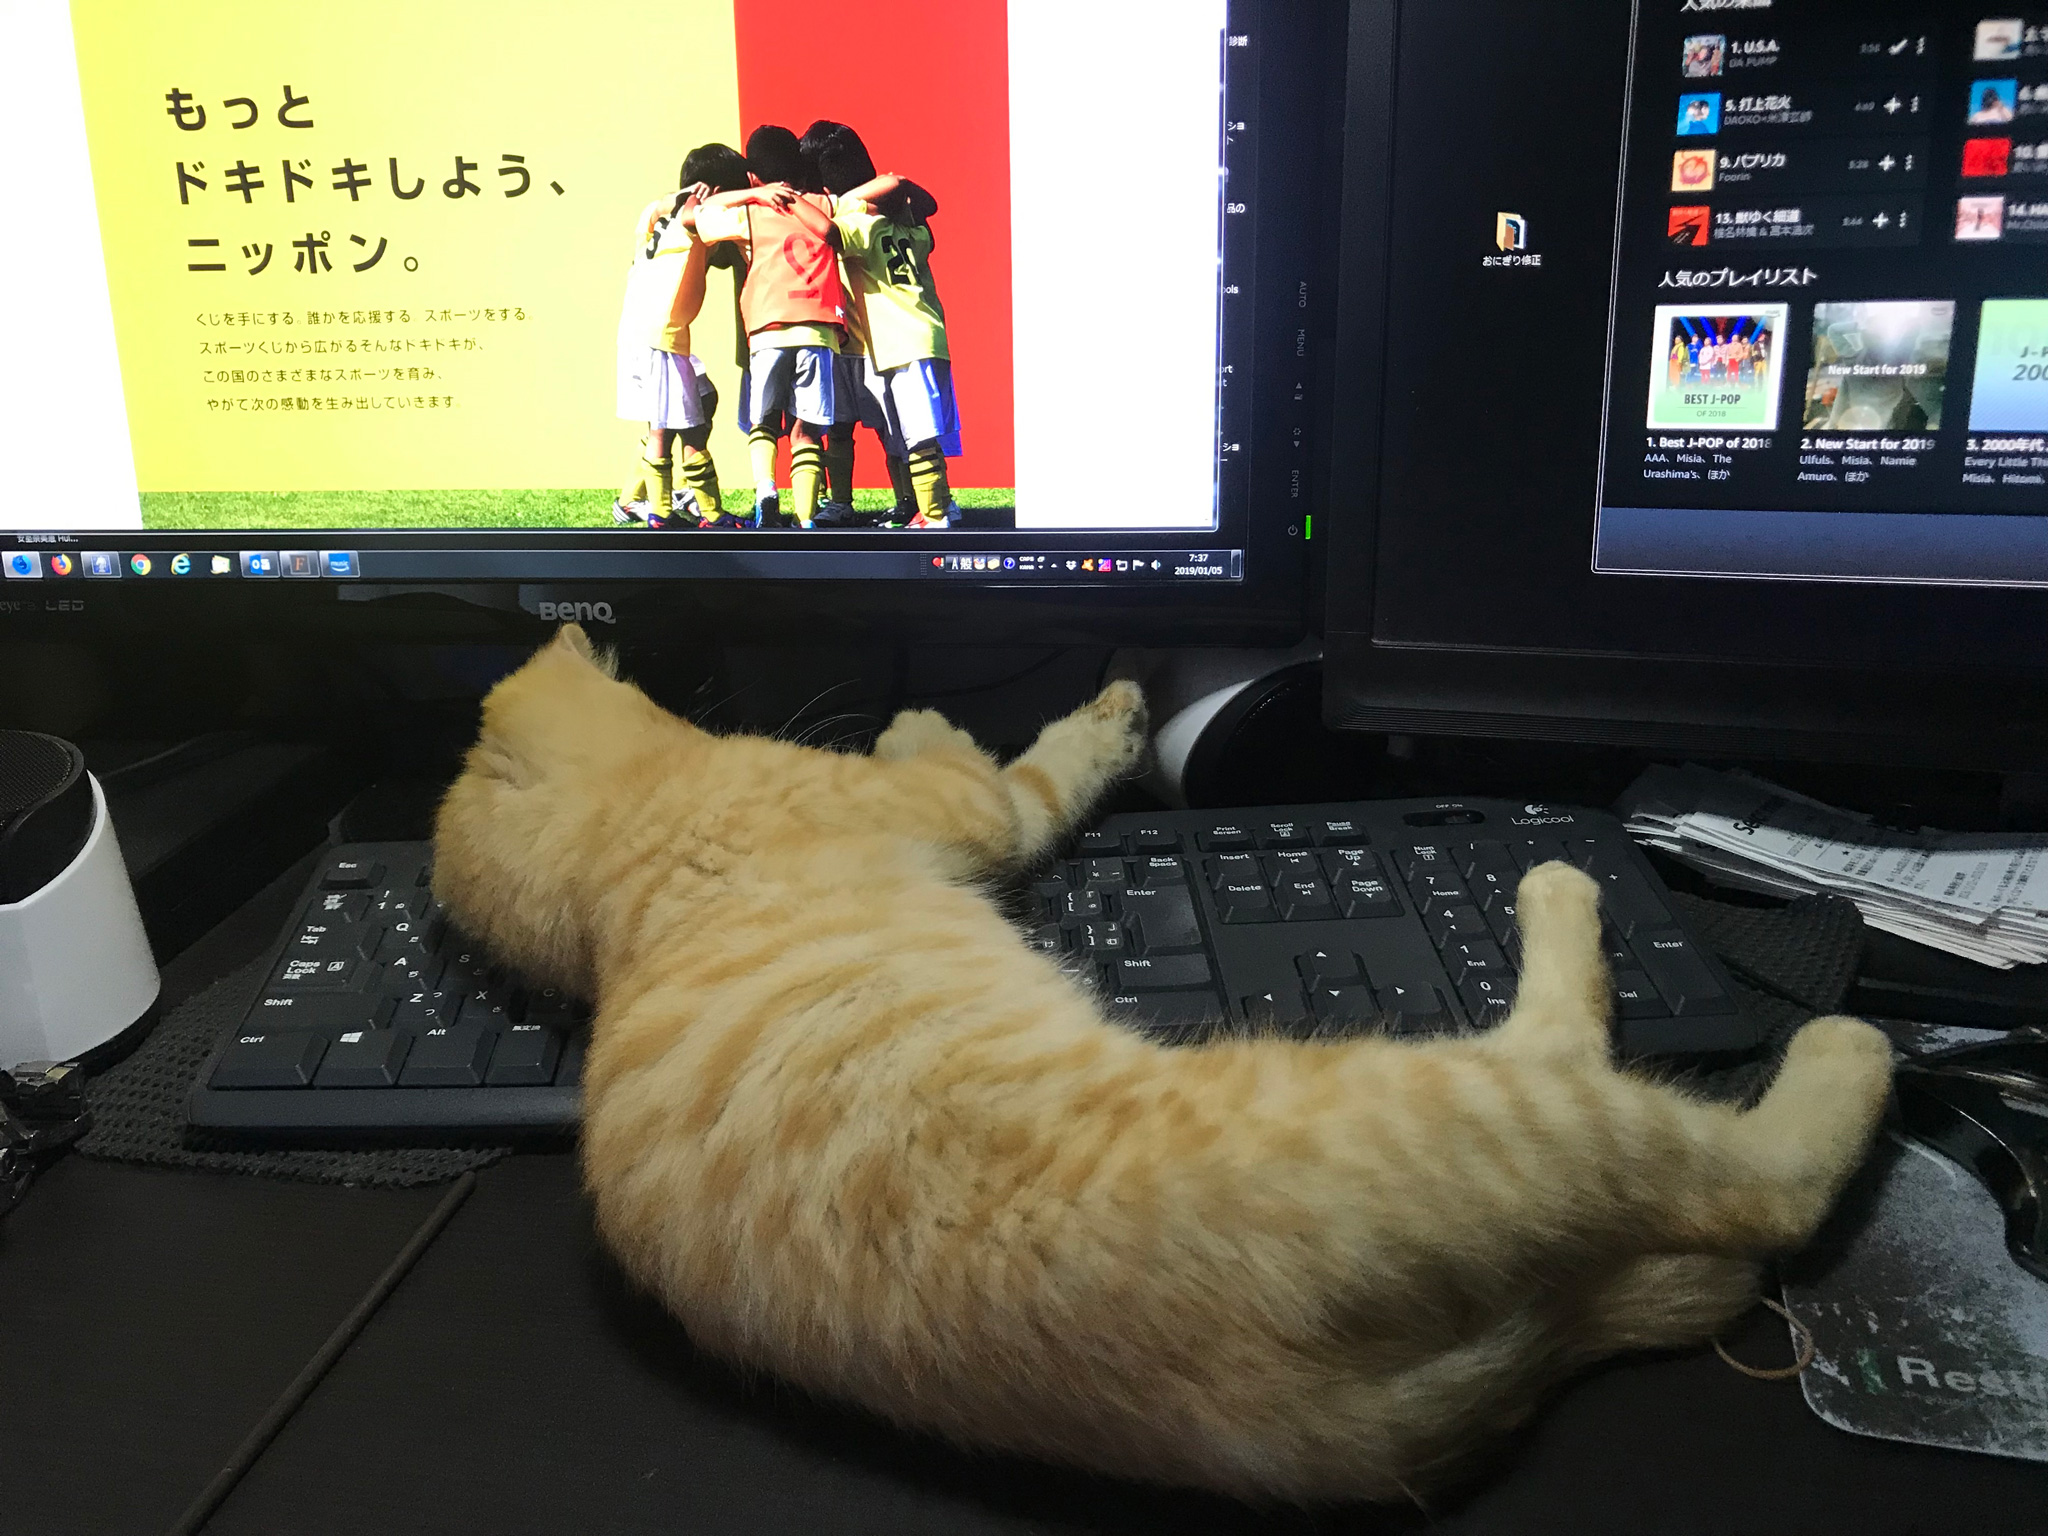 猫飼いの悩み 邪魔かわいい ドヤ顔の猫がキーボードの上で寝る問題 Carna タスカルナ ホームページ制作 札幌市 東京を中心にweb Wordpress制作